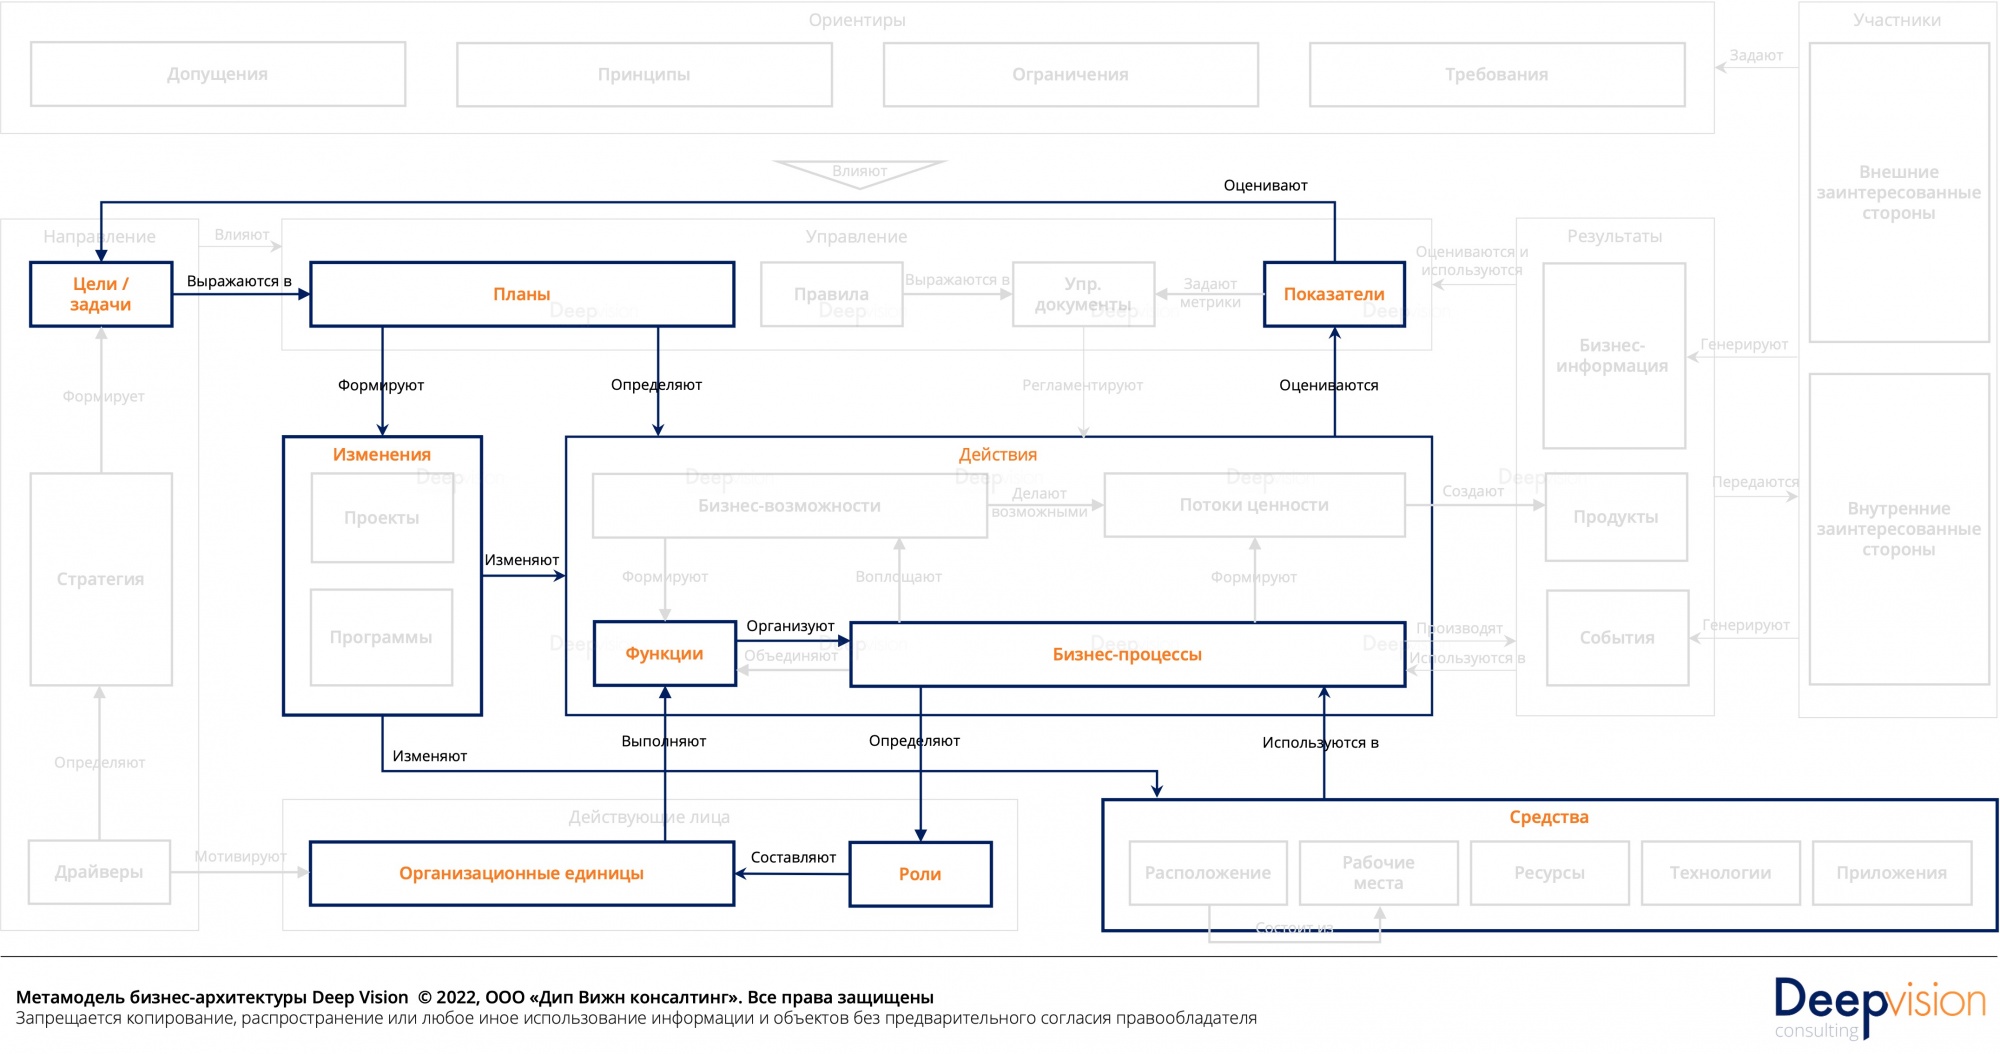 Метамодель бизнес-архитектуры - контур ресурсов.jpg